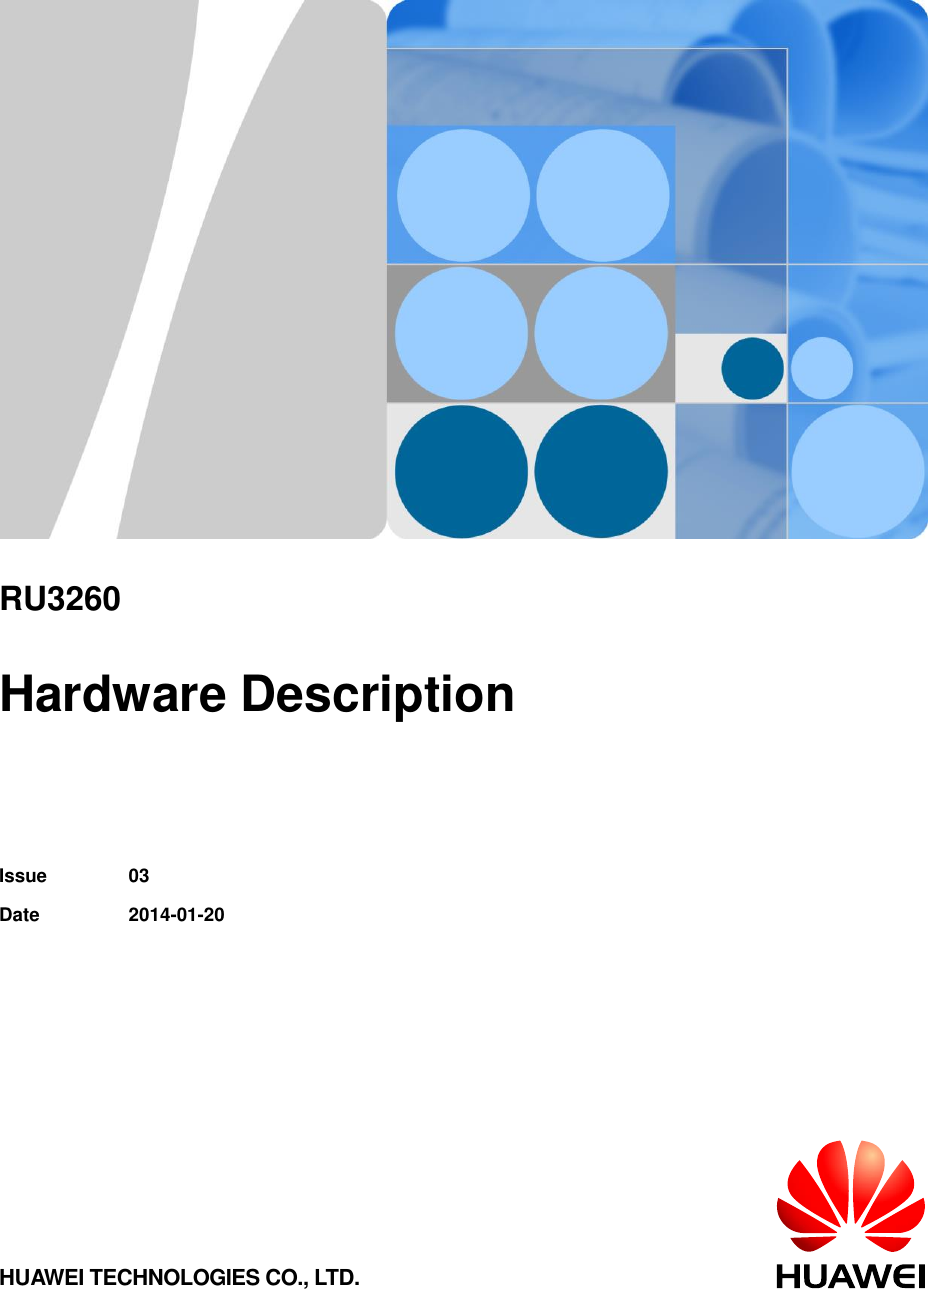           RU3260  Hardware Description   Issue 03 Date 2014-01-20 HUAWEI TECHNOLOGIES CO., LTD. 